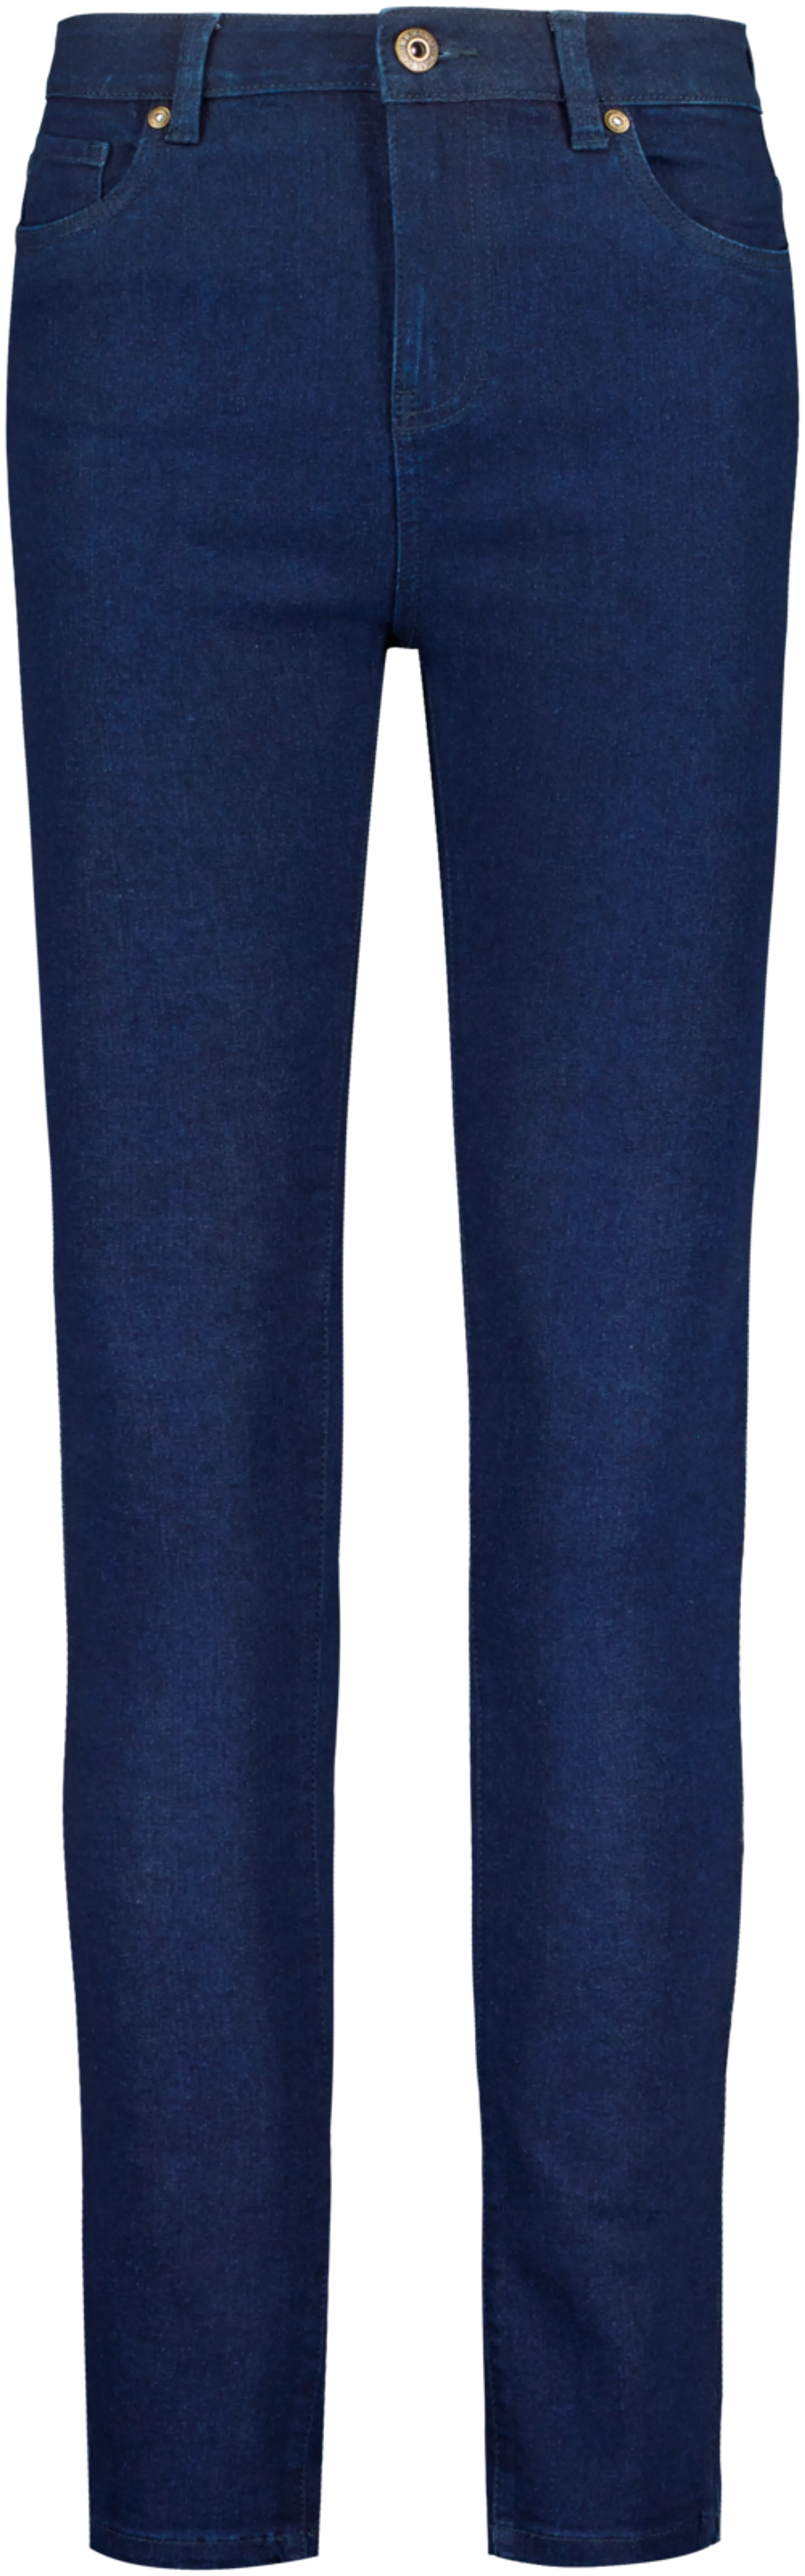 iJeans naisten farkut skinny fit NIJ3021012 - DARK BLUE DENIM - 1